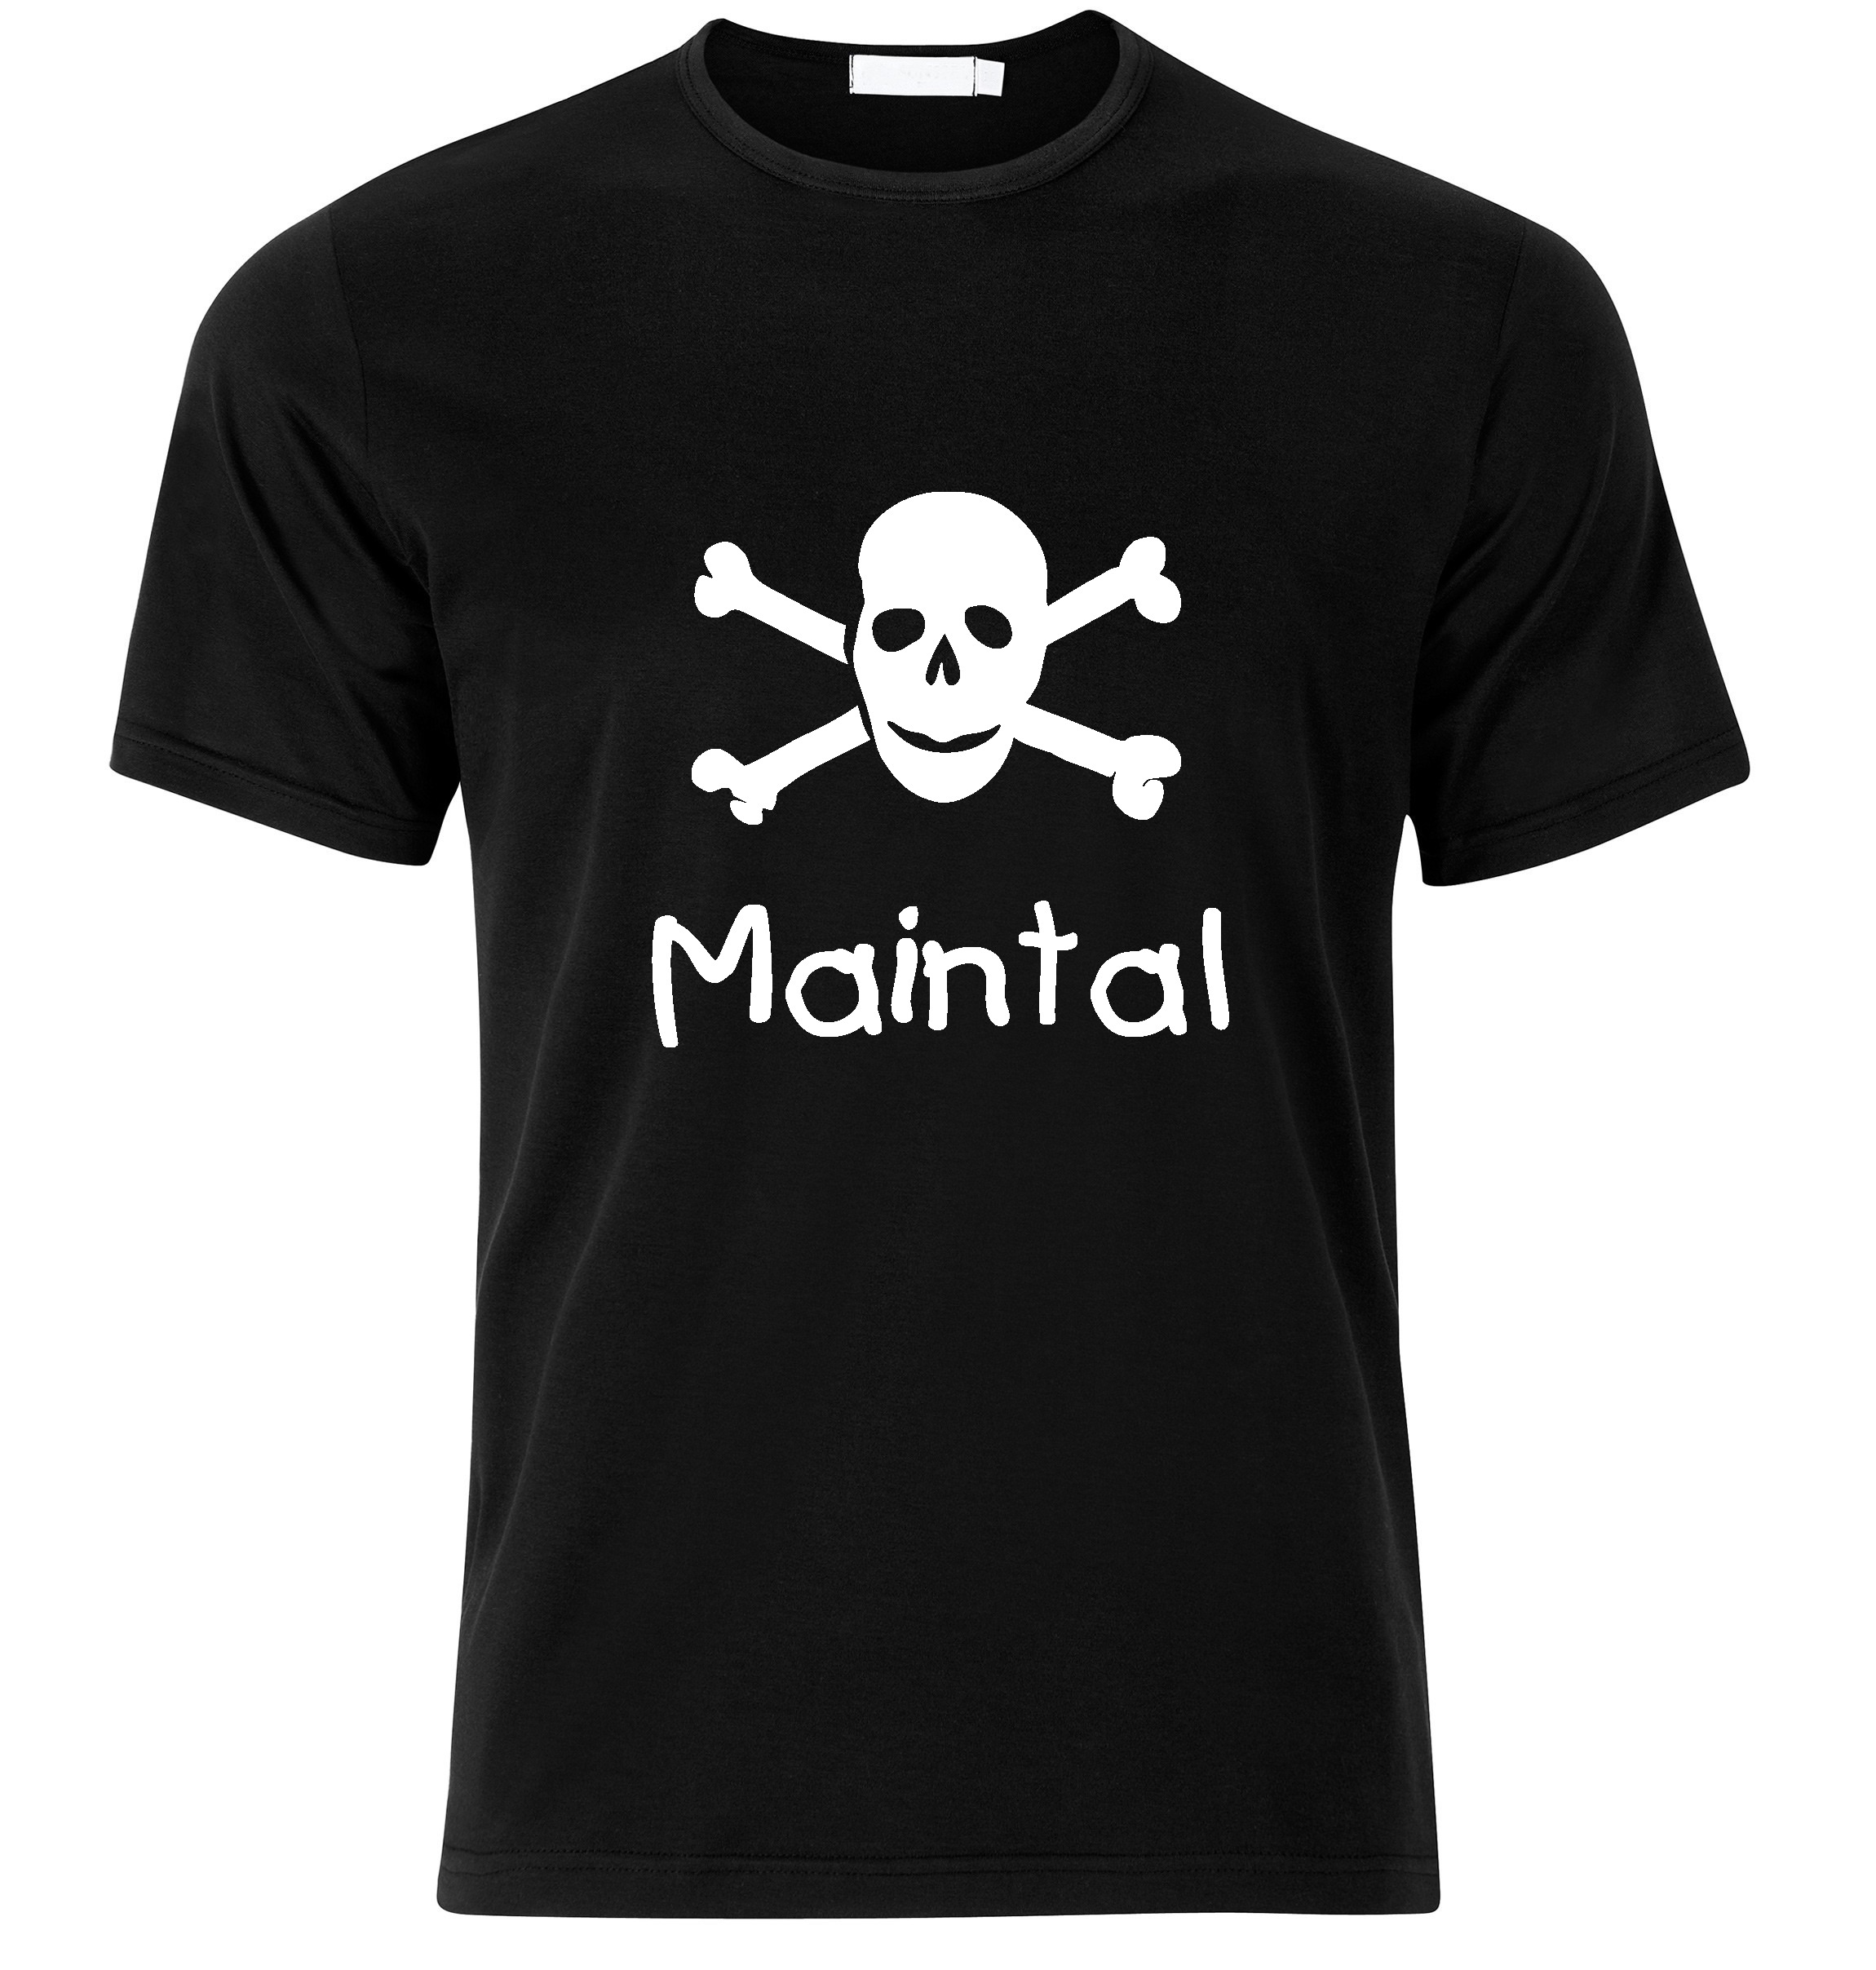 T-Shirt Maintal Jolly Roger, Totenkopf